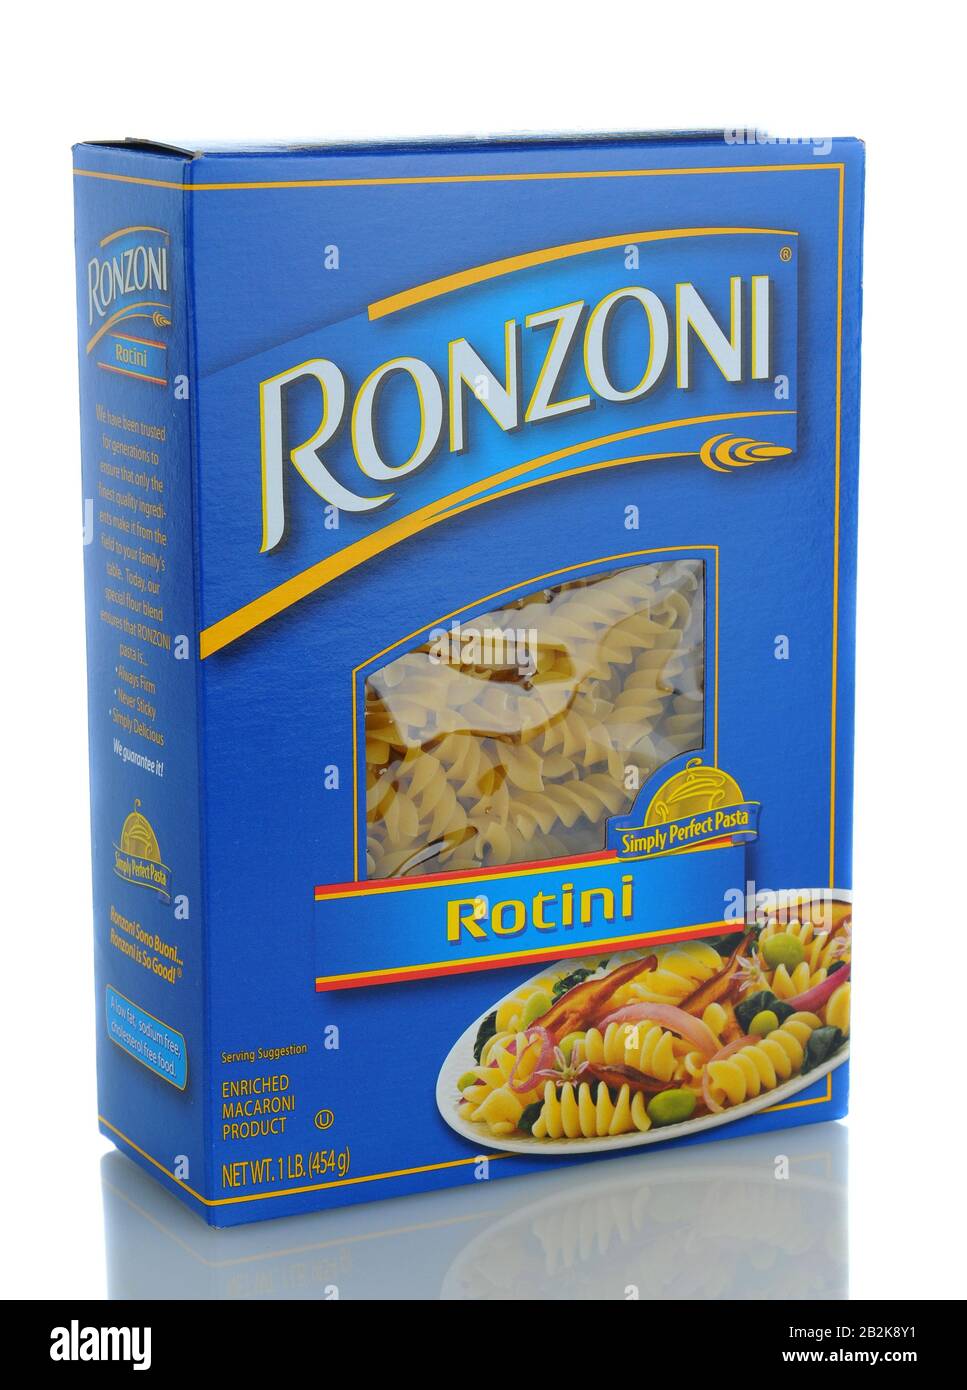 Irvine, CA - 21 gennaio 2013: Una scatola da una libbra di Ronzoni Rotini Pasta. Rotini è una pasta a forma di cavatappi o a spirale e Una delle più versatili al Foto Stock